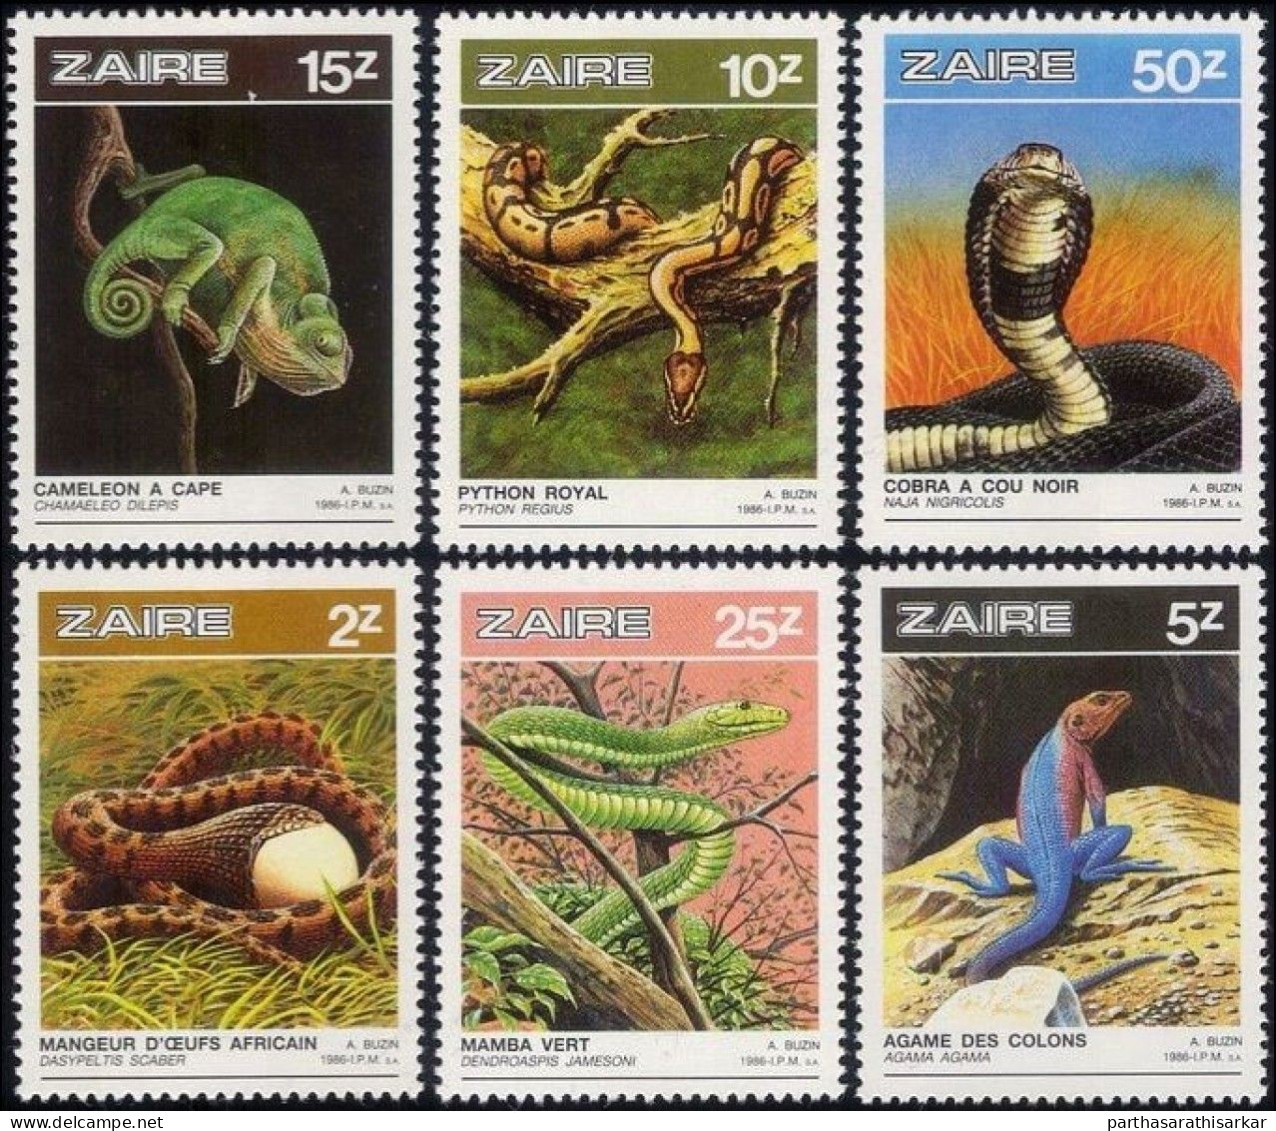 ZAIRE 1986 REPTILES SNAKES LIZARDS NATURE WILDLIFE COMPLETE SET MNH - Slangen